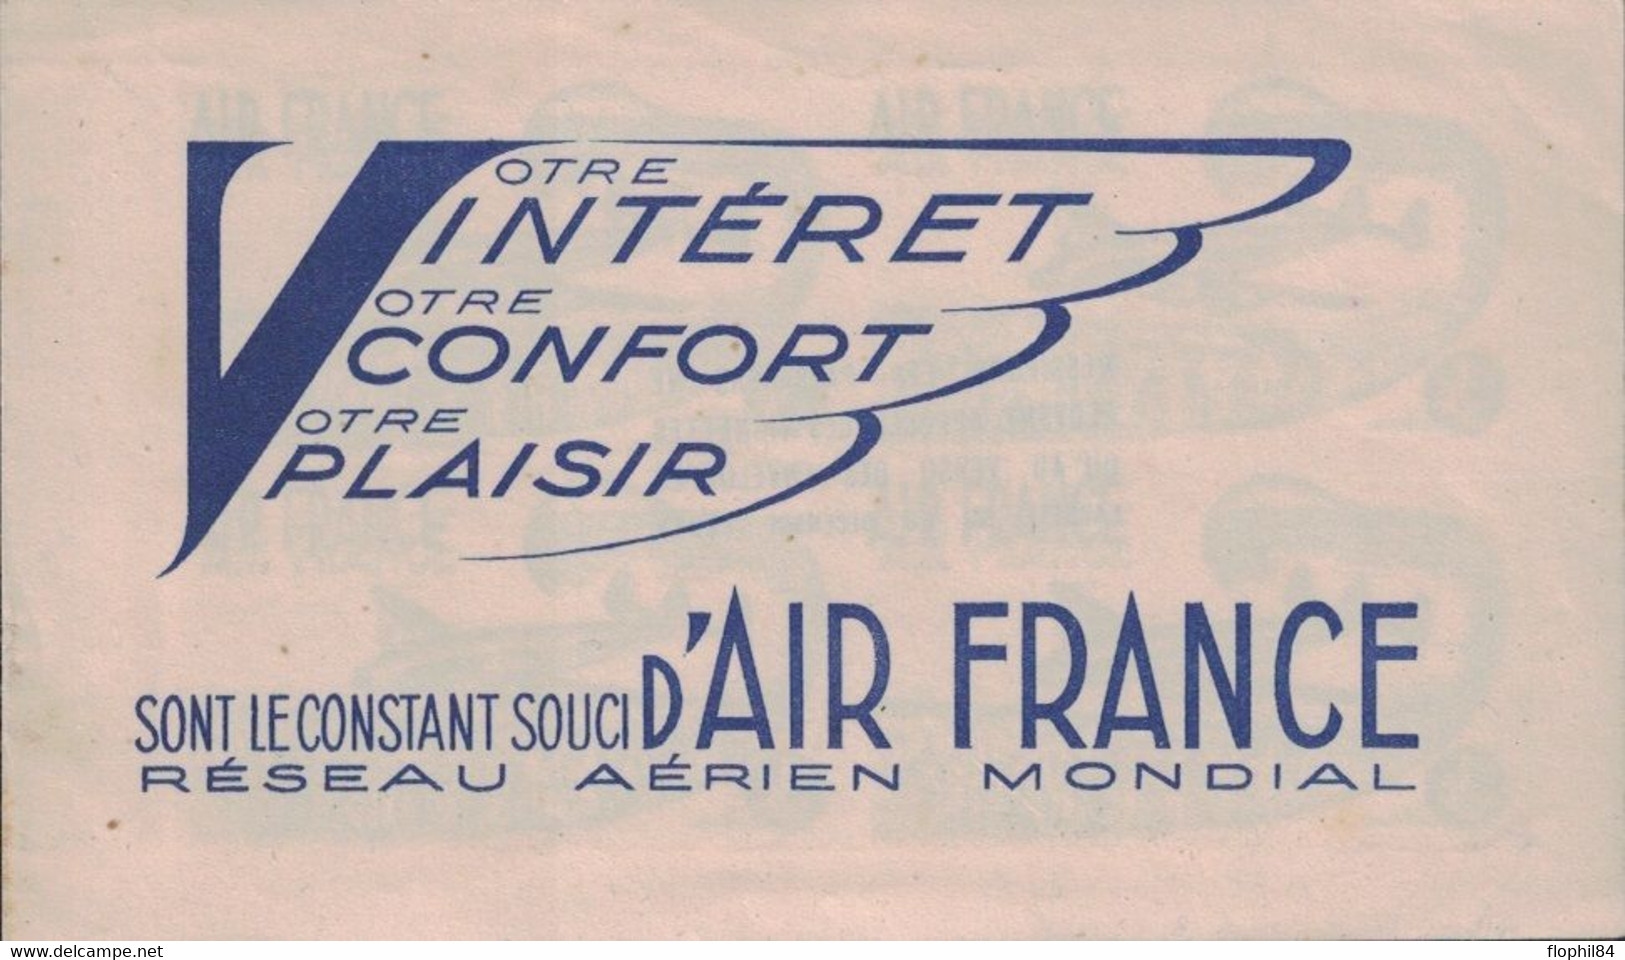 AIR FRANCE - VOTRE INTERET VOTRE CONFORT VOTRE PLAISIR SONT LE CONSTANT SOUCI D'AIR FRANCE - CARNET 4 VIGNETTES. - Aviación